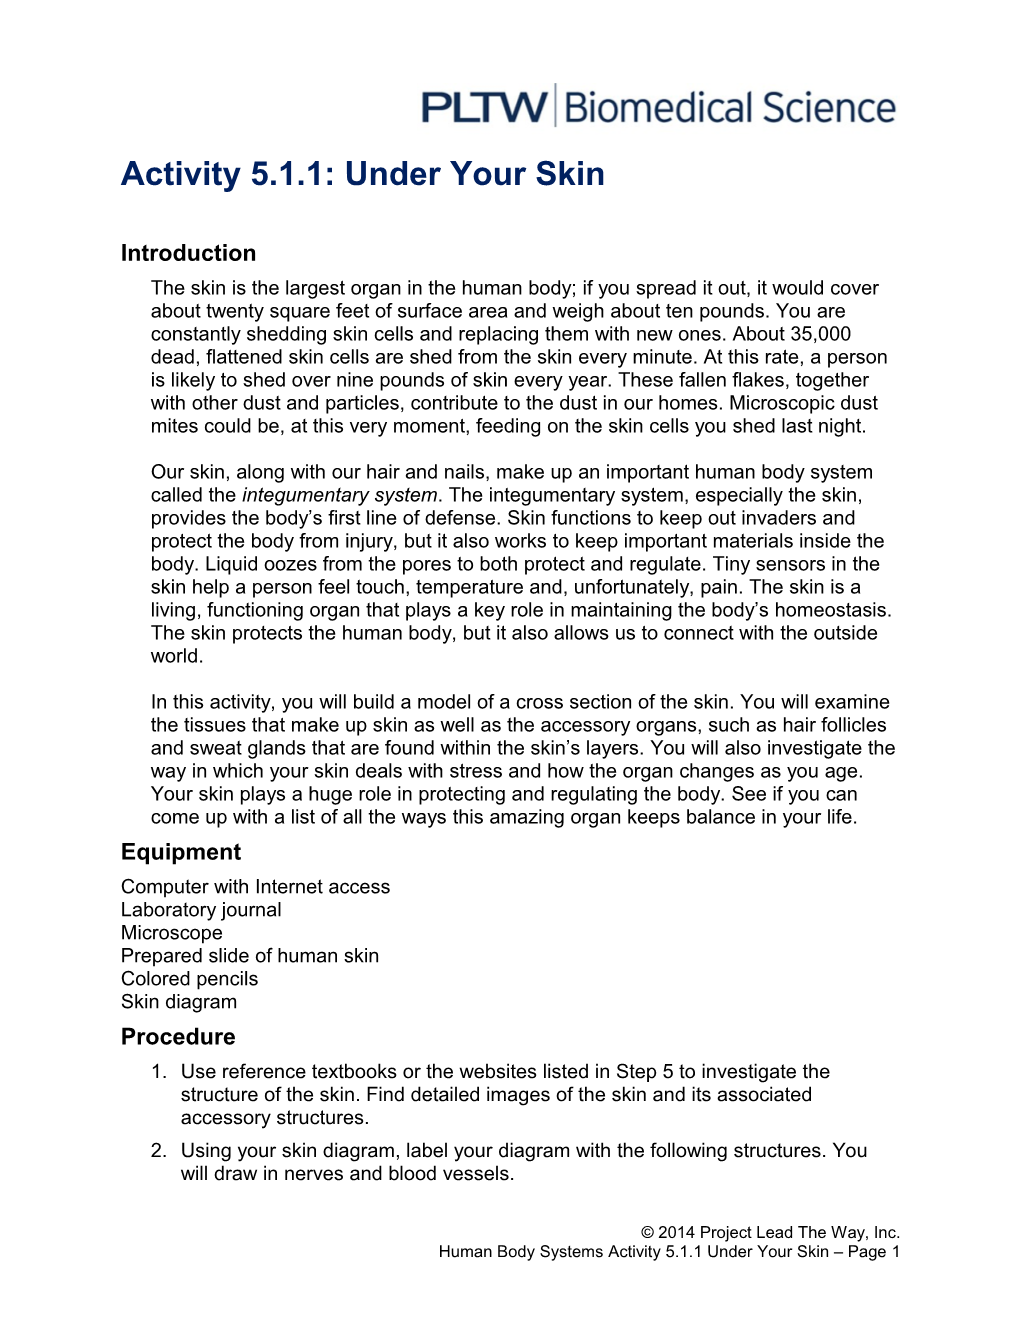 Activity 5.1.1: Under Your Skin